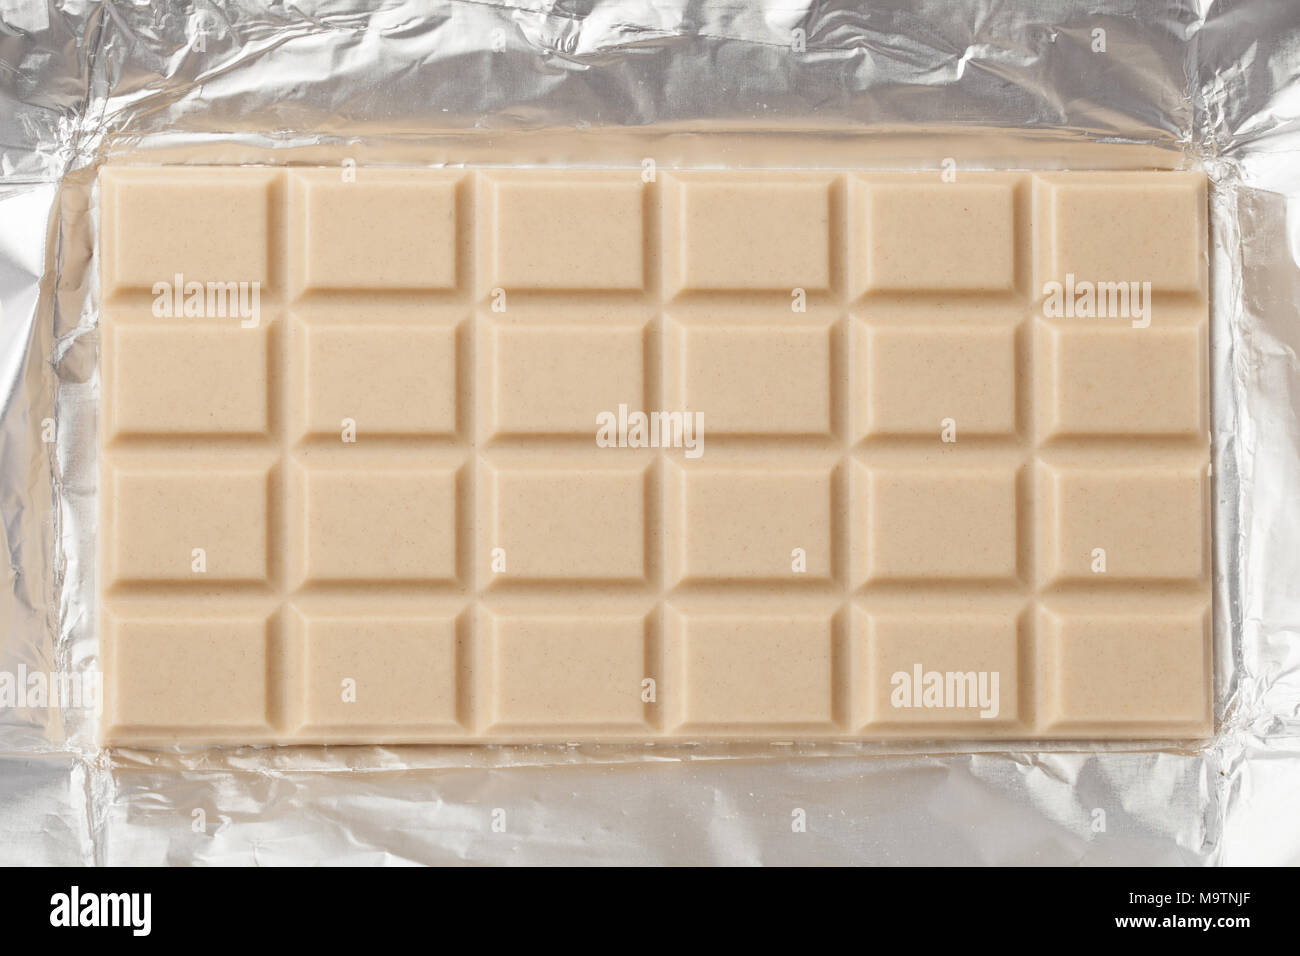 Ganze bar von milchig weiße Schokolade in einem offenen Metallic Folie Verpackung Stockfoto